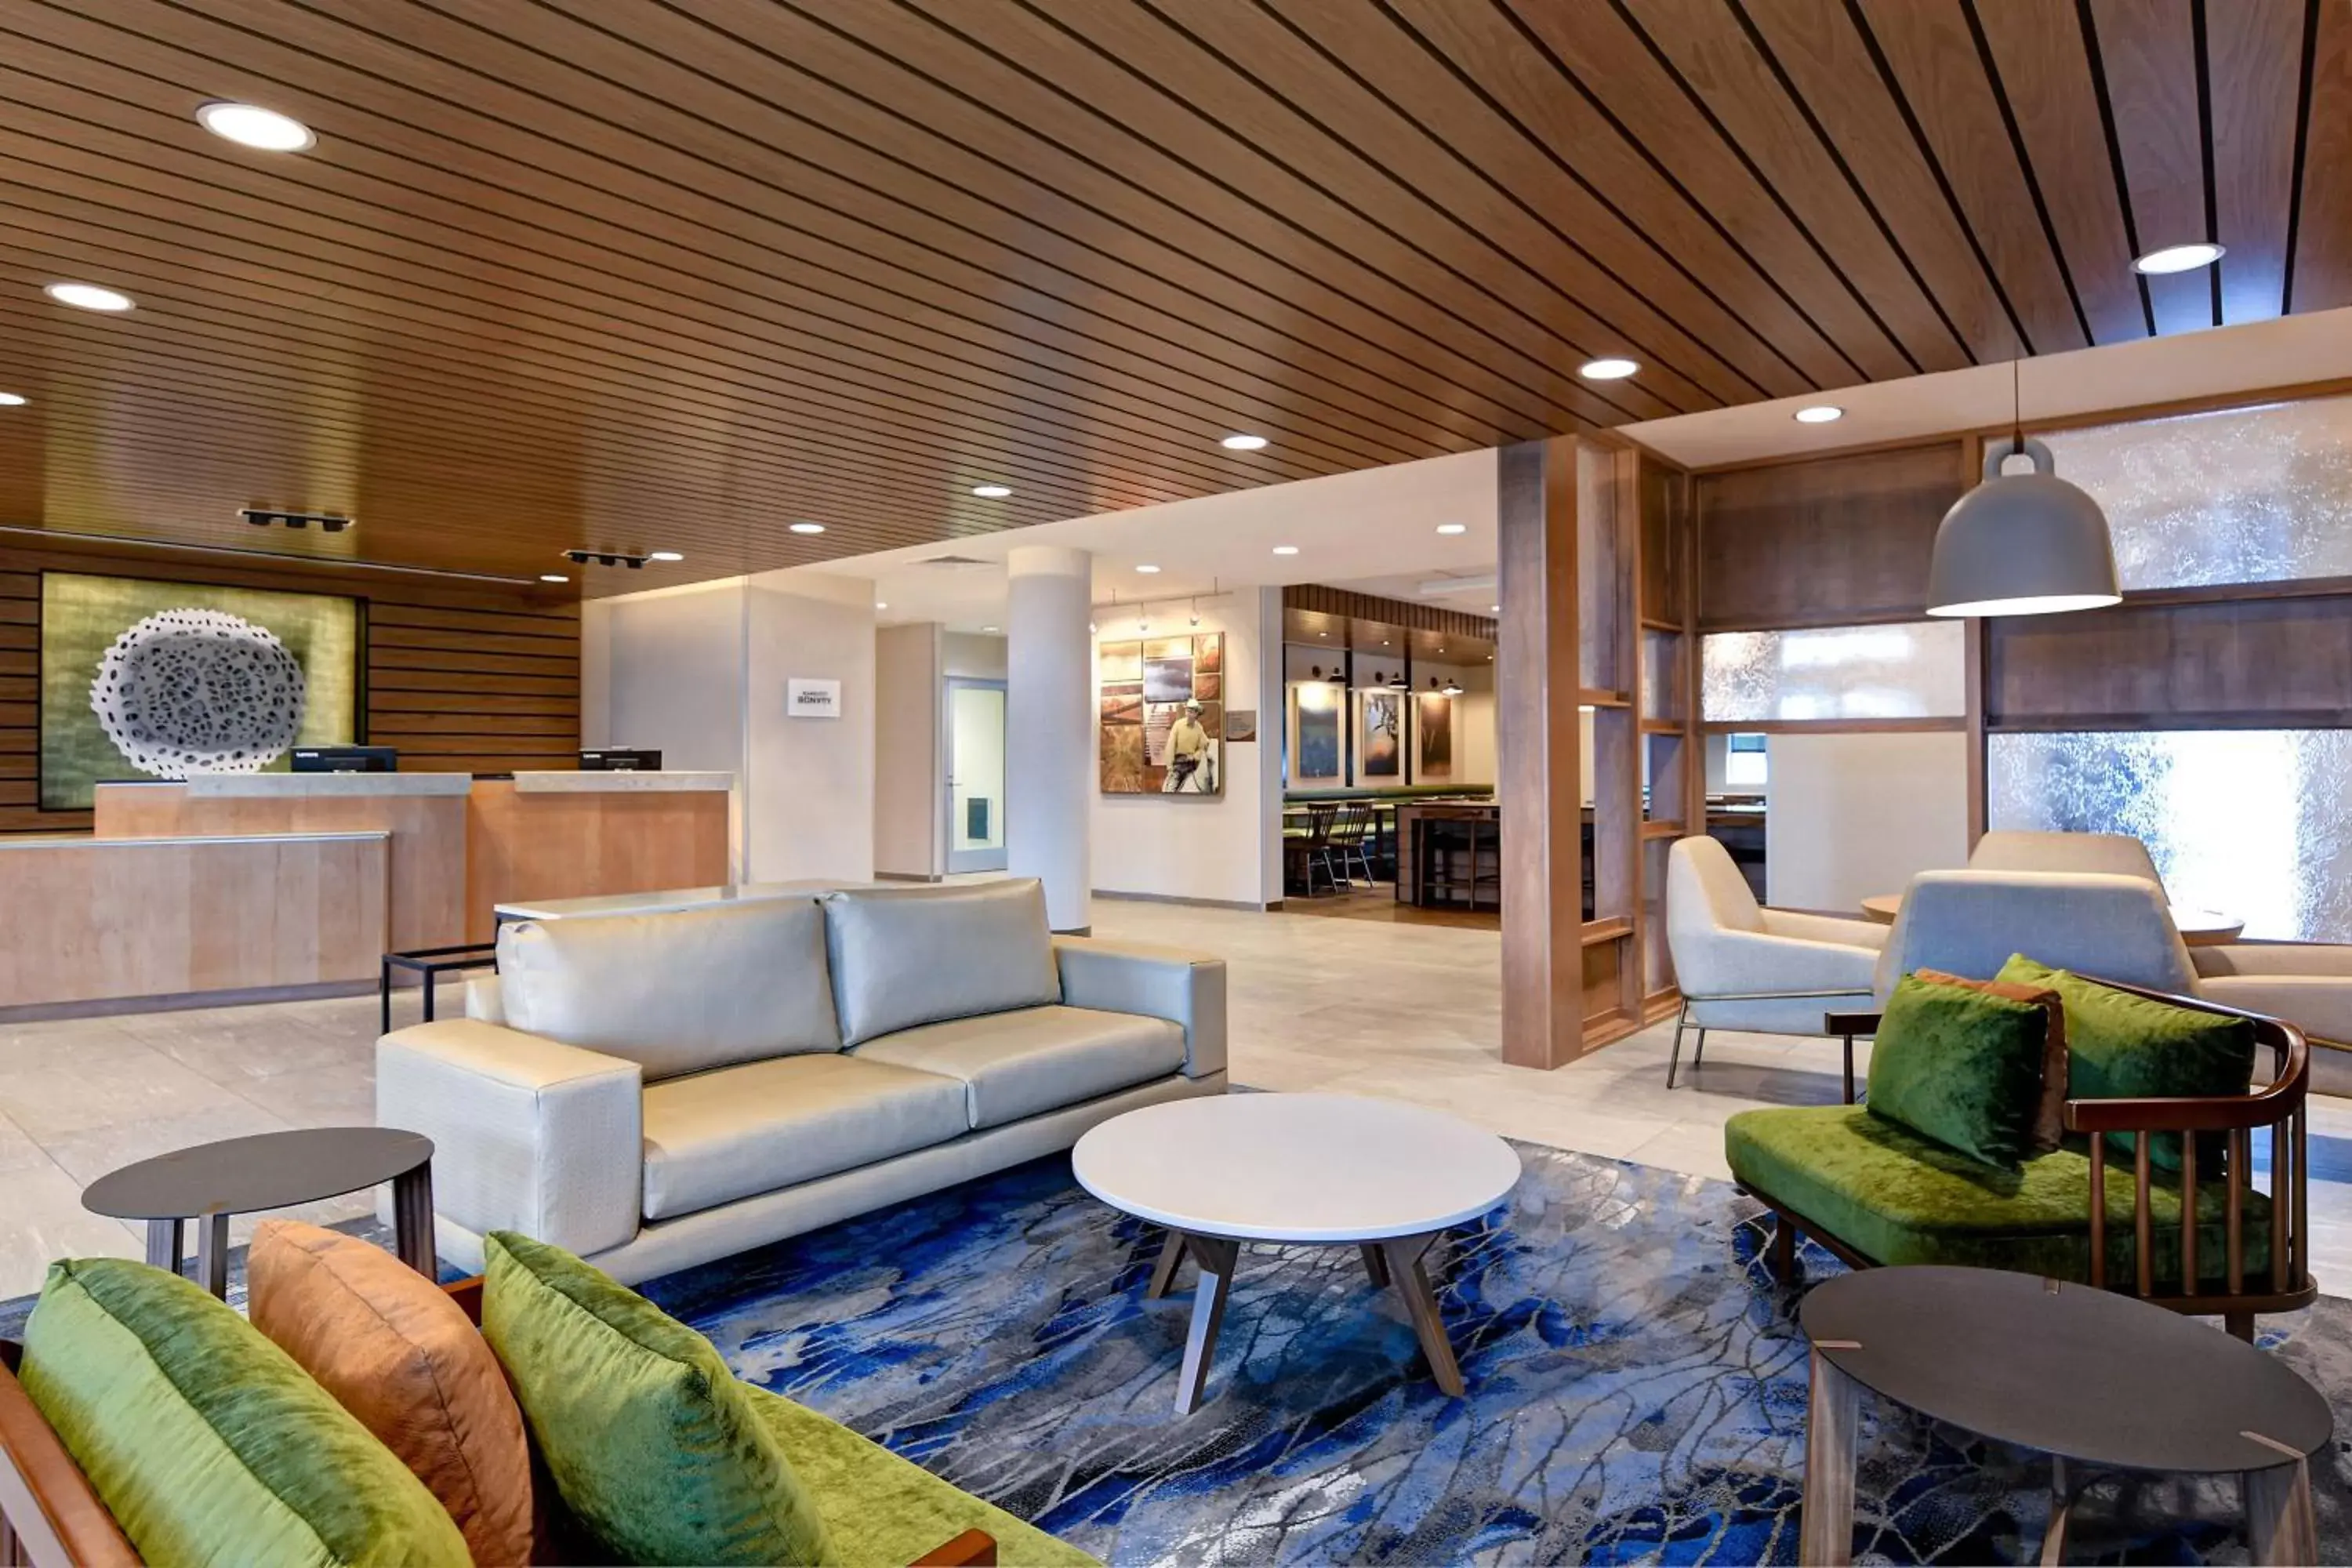 Lobby or reception, Lobby/Reception in Fairfield Inn & Suites by Marriott Selinsgrove